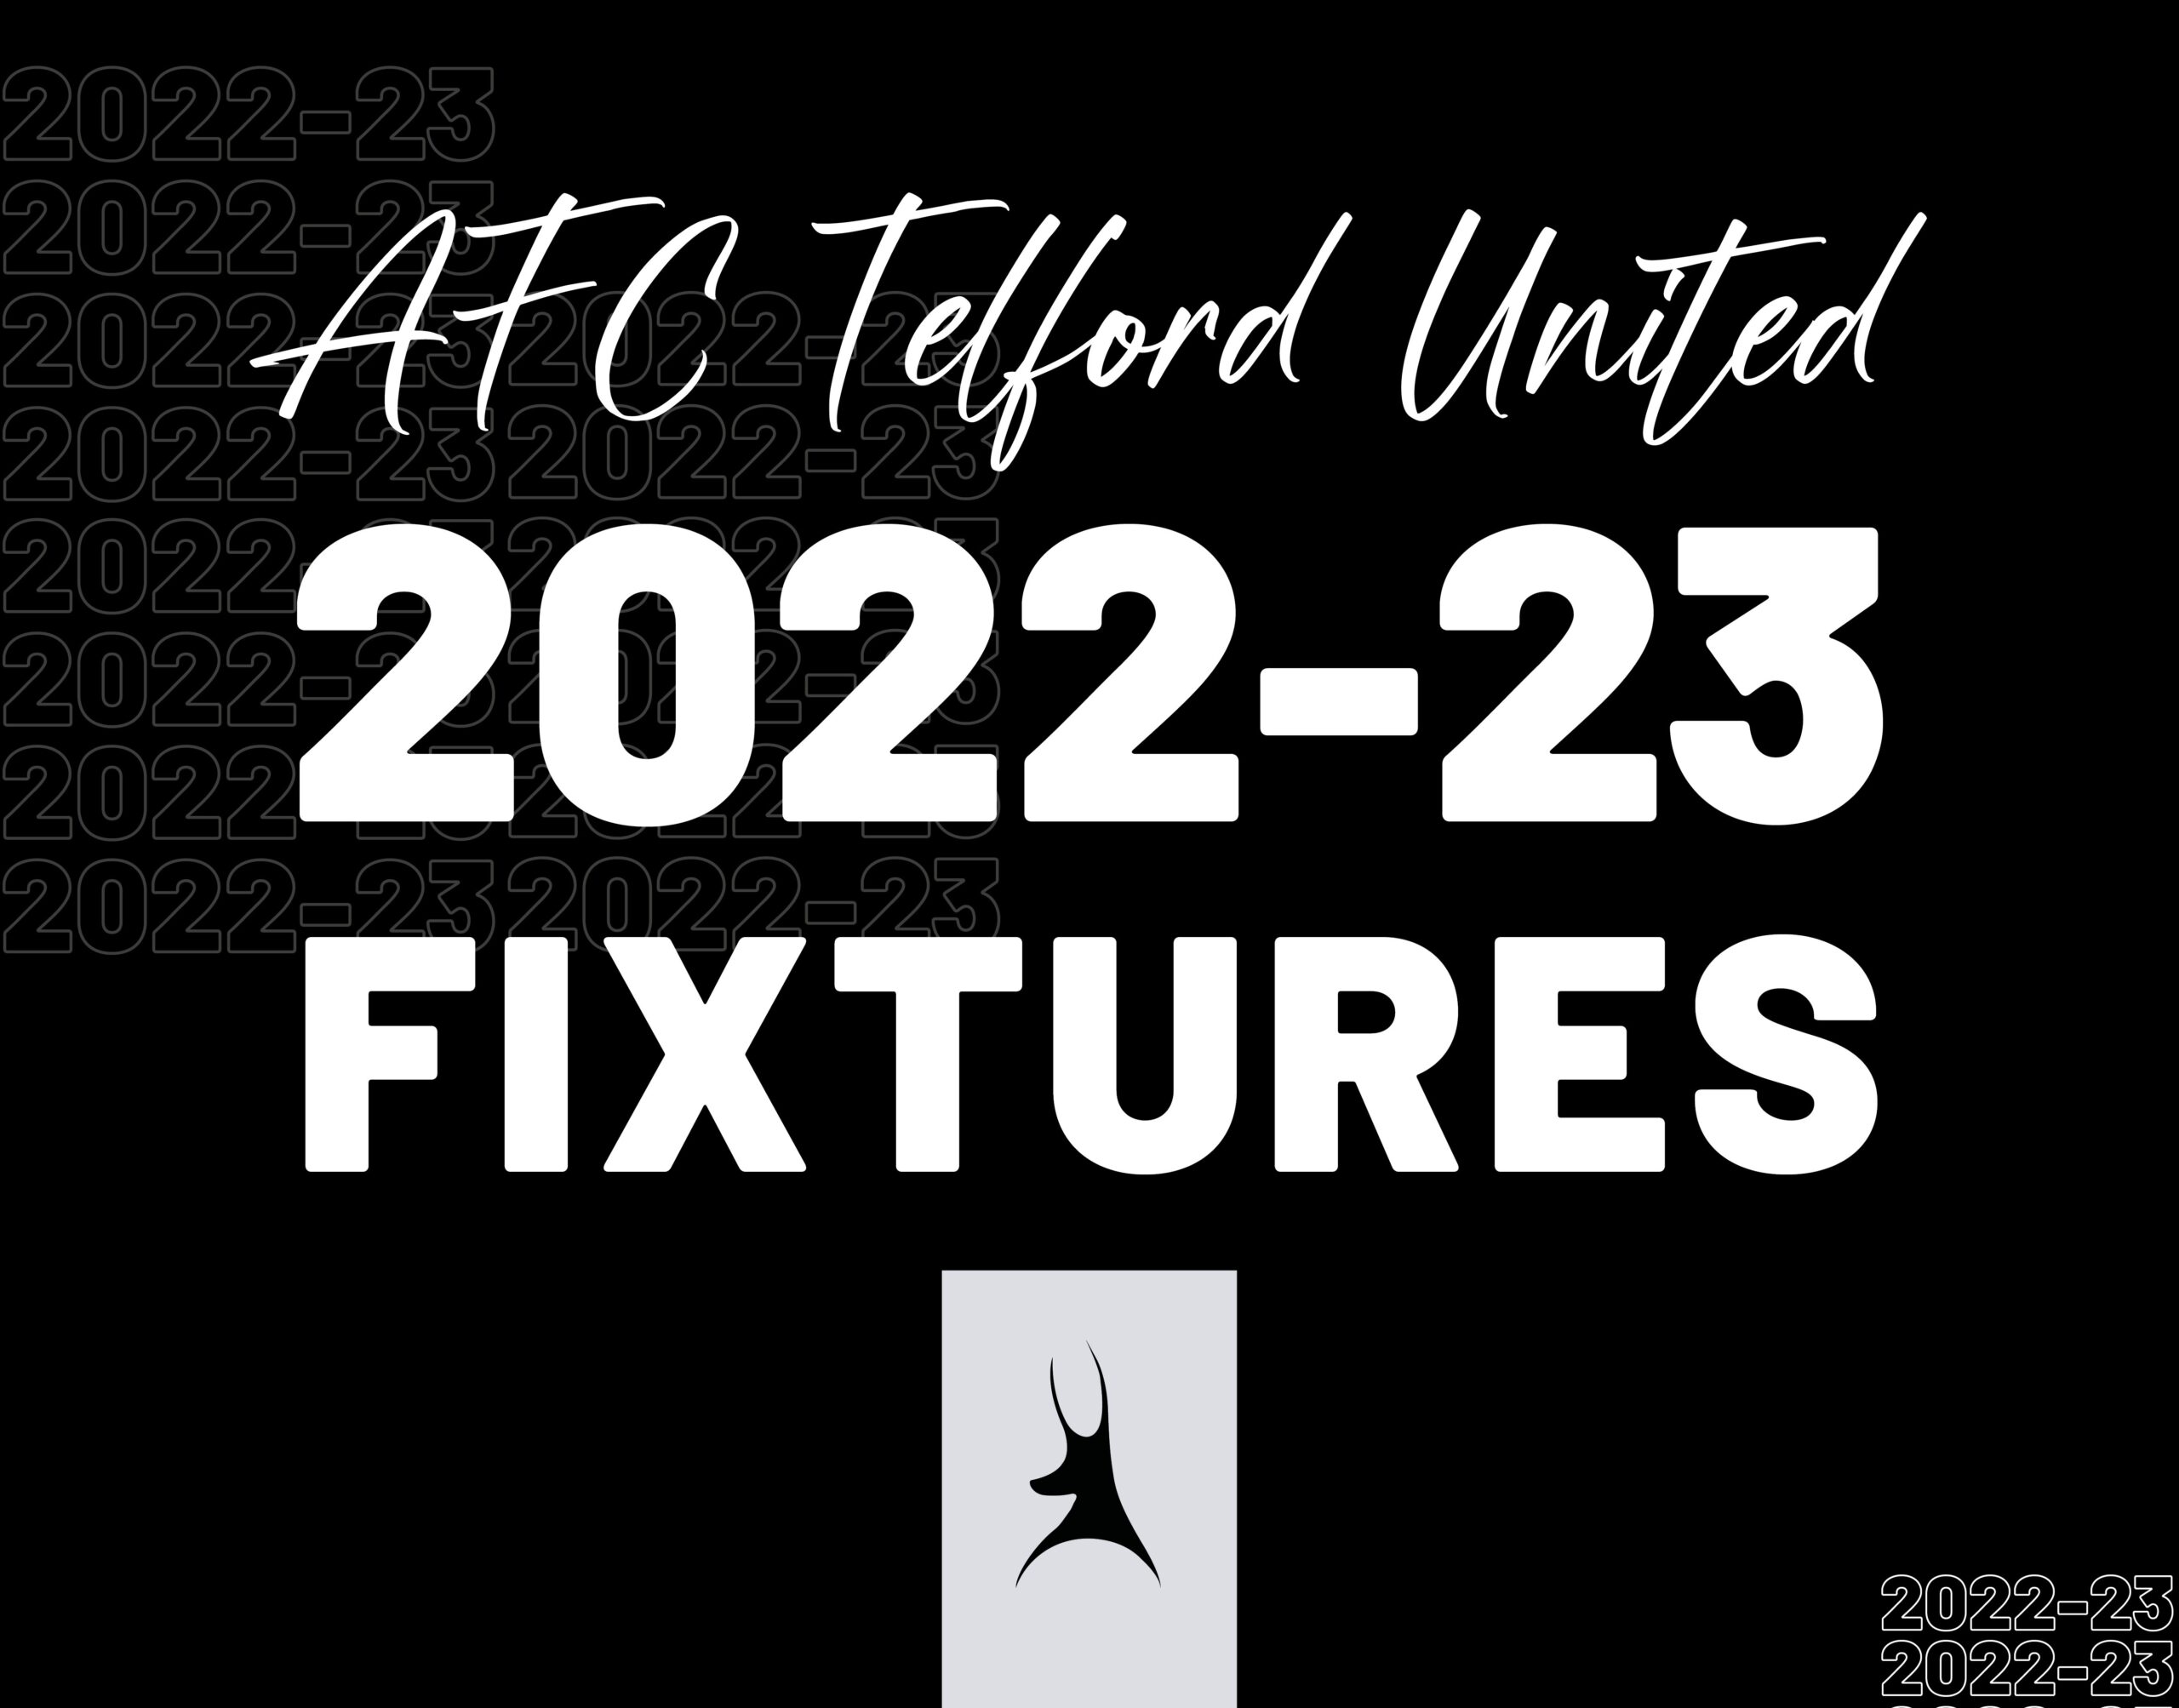 2022/23 Fixtures Released